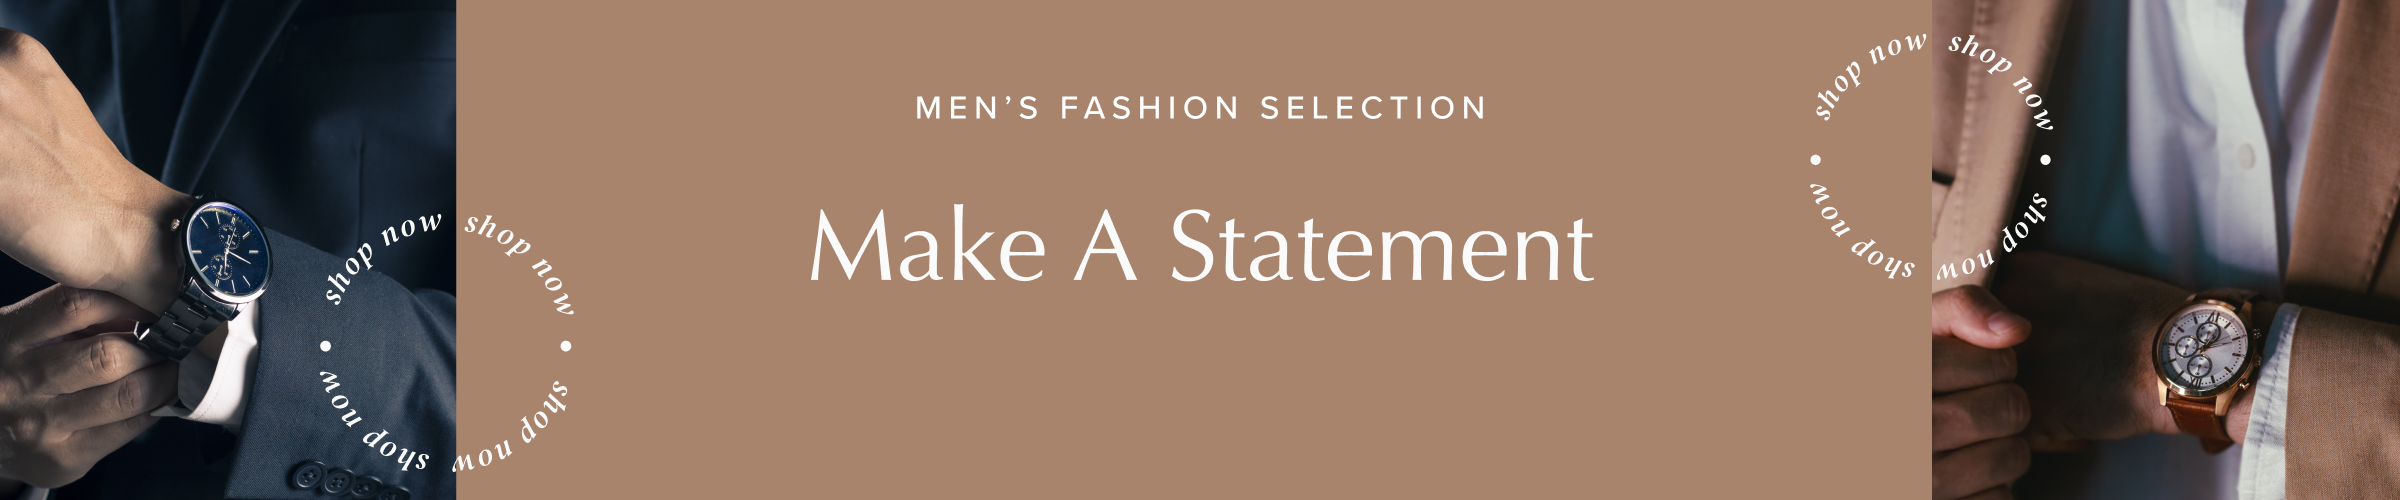 Men's Fashion Selection